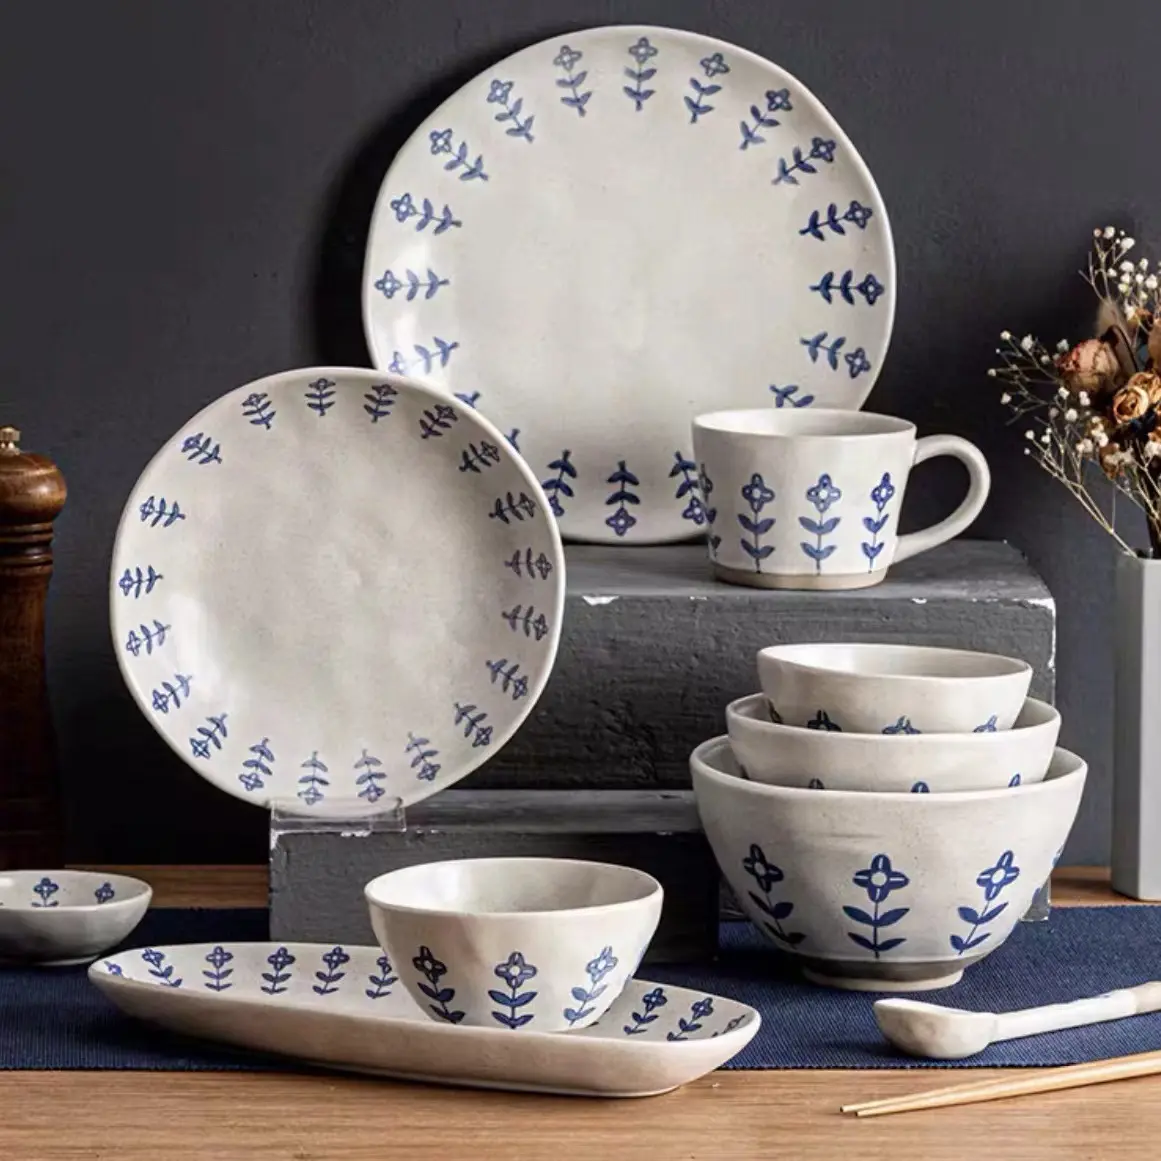 Grosir jumlah besar set peralatan makan keramik buatan tangan glasir modern vintage hotel Rumah Restoran Makan Malam